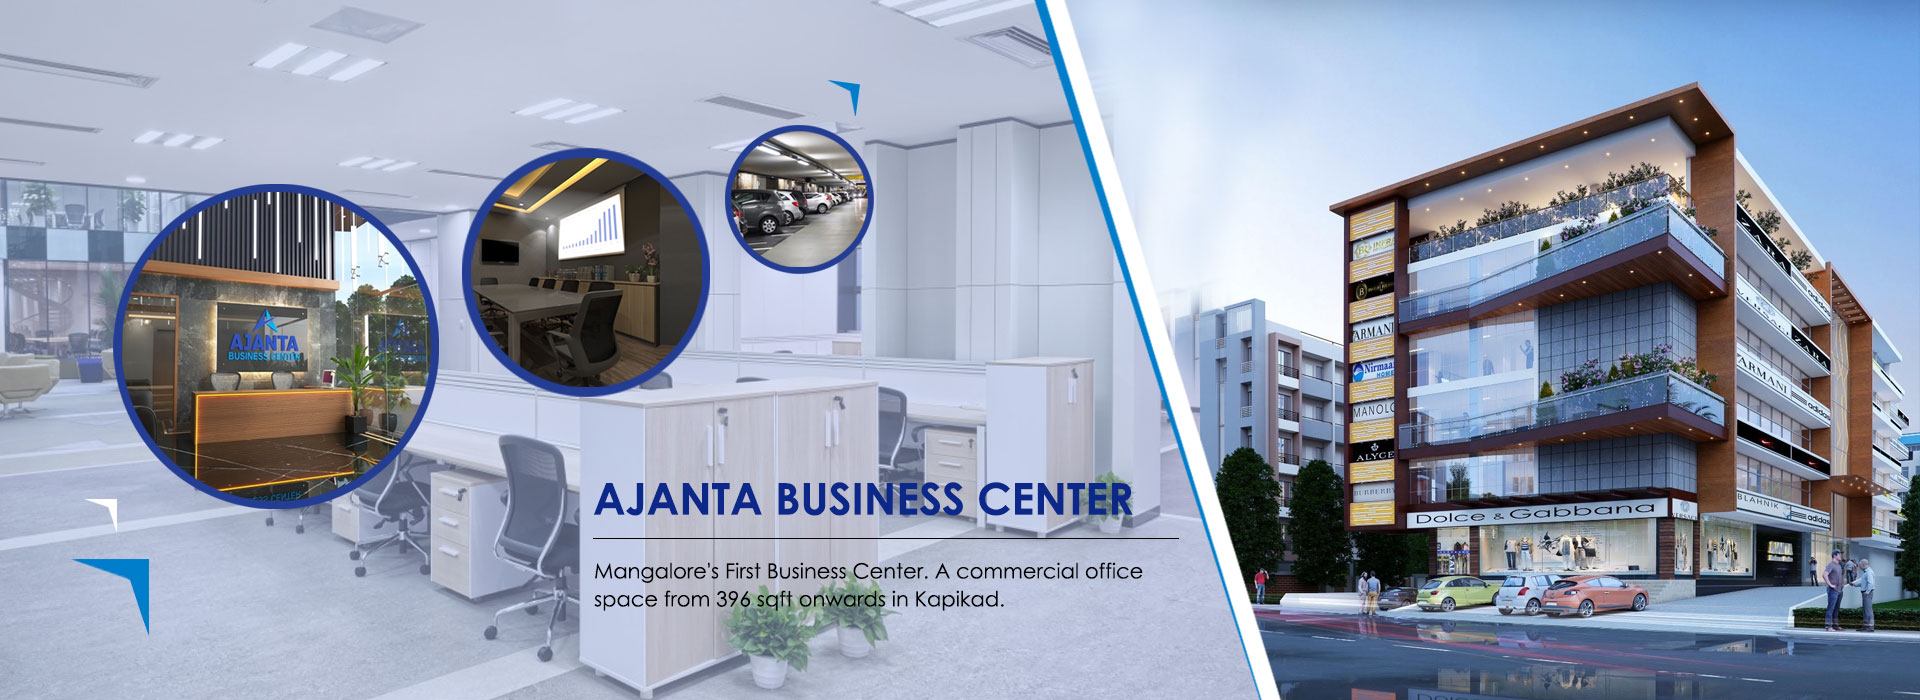 Ajanta Business Center, Ajanta Business Center Mangalore, Ajanta Business Center by Mukund MGM Realty Mangalore, Ajanta Business Center Mangalore by Mukund MGM Realty Mangalore